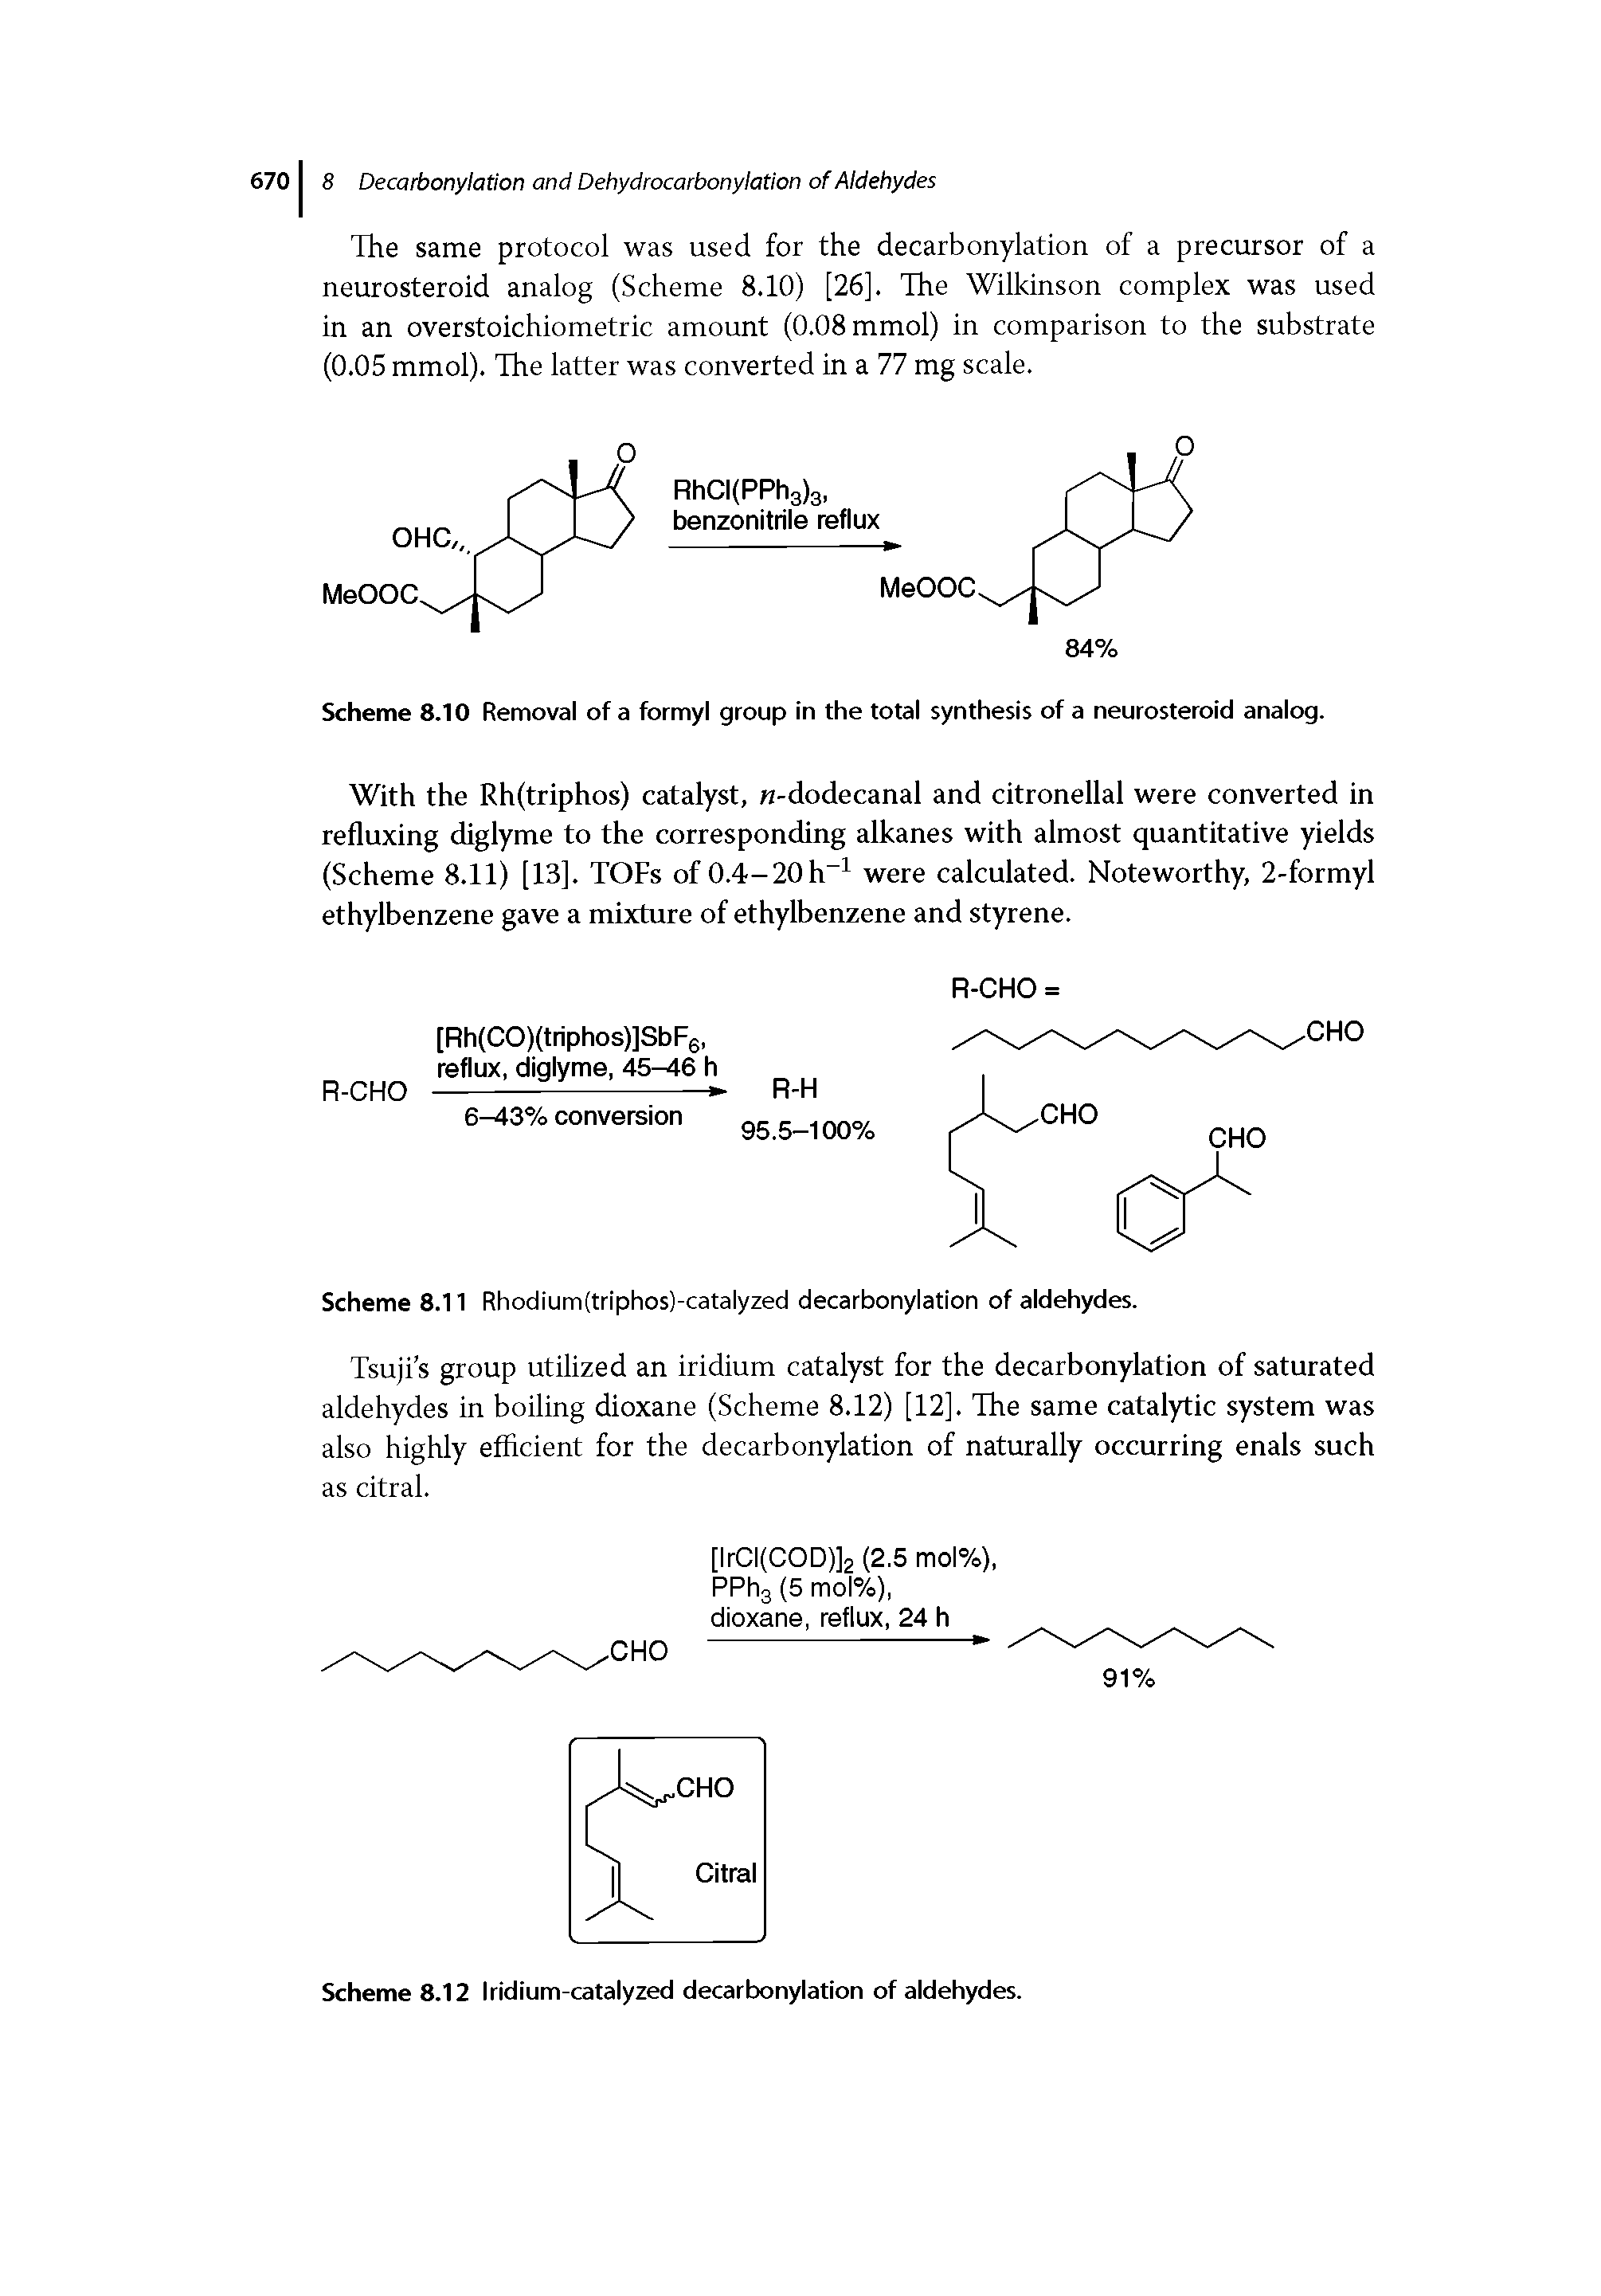 Scheme 8.11 Rhodium(triphos)-catalyzed decarbonylation of aldehydes.